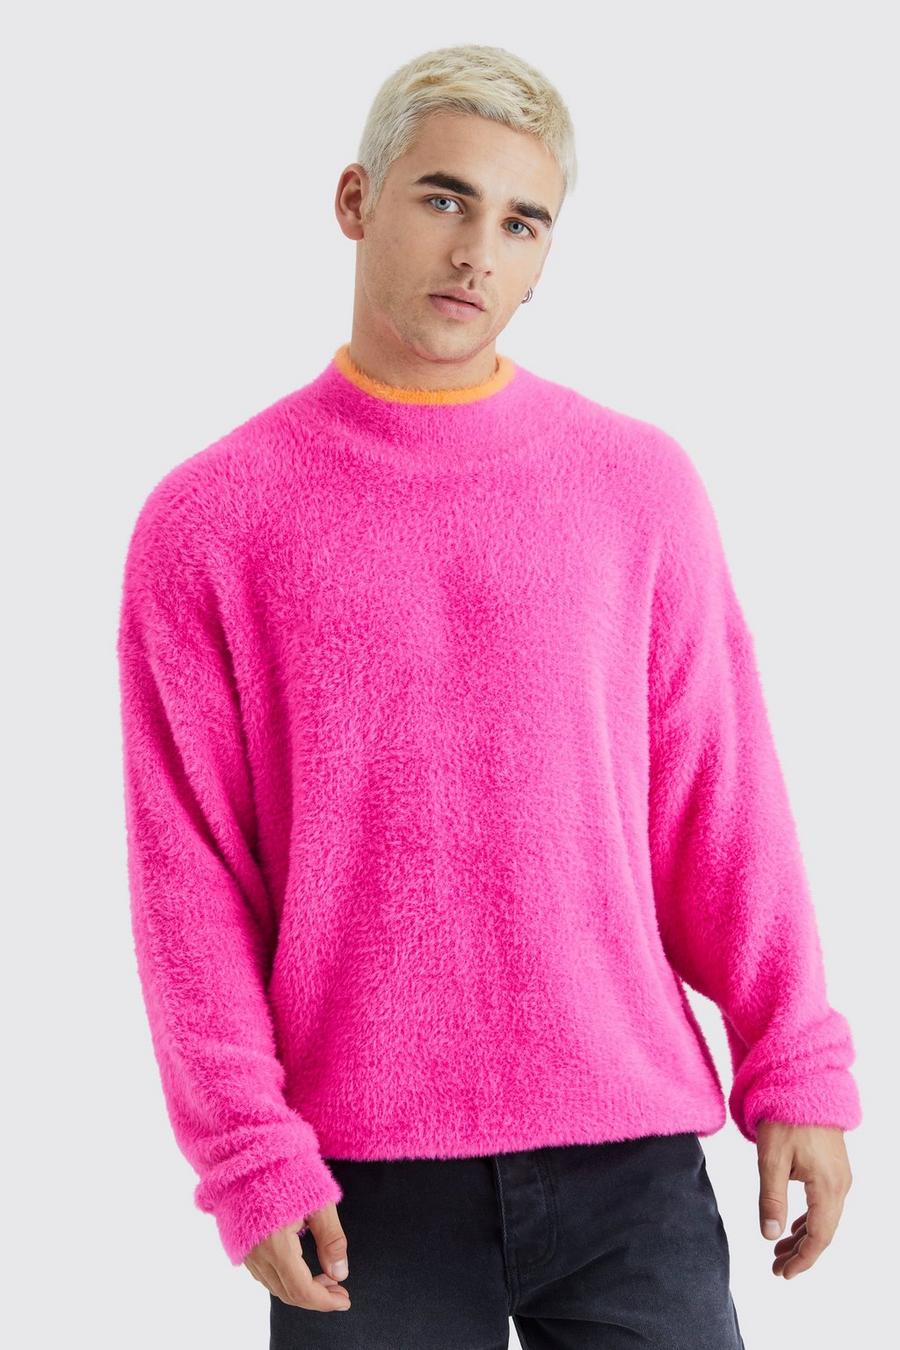 Flauschiger Oversize Pullover mit Trichterkragen, Hot pink image number 1